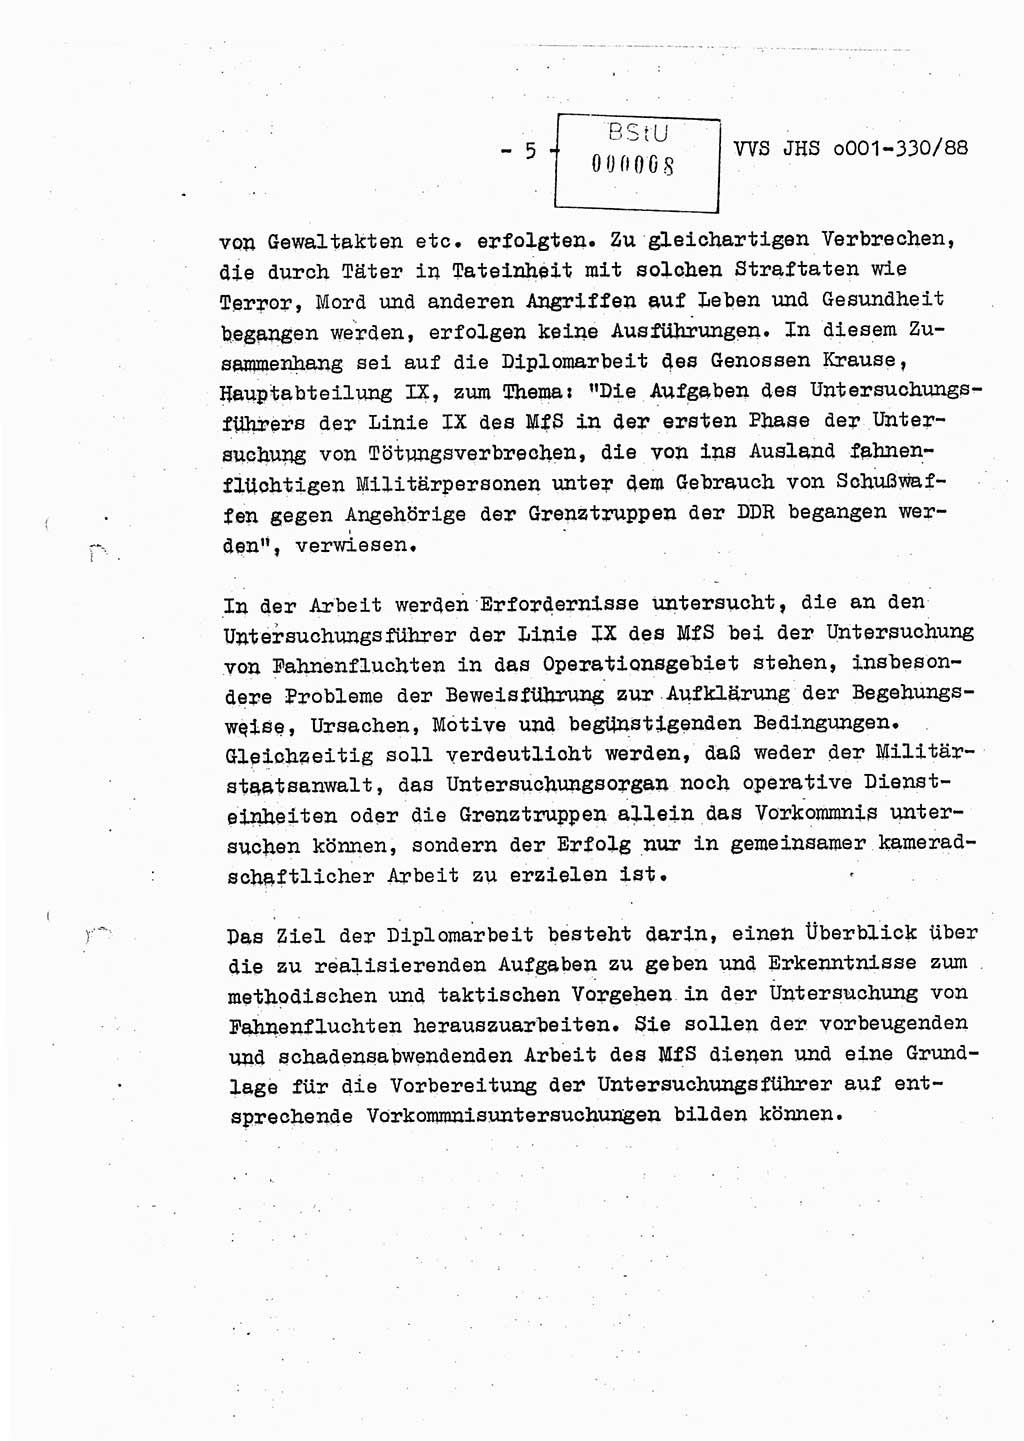 Diplomarbeit Offiziersschüler Thomas Mühle (HA Ⅸ/6), Ministerium für Staatssicherheit (MfS) [Deutsche Demokratische Republik (DDR)], Juristische Hochschule (JHS), Vertrauliche Verschlußsache (VVS) o001-330/88, Potsdam 1988, Seite 5 (Dipl.-Arb. MfS DDR JHS VVS o001-330/88 1988, S. 5)